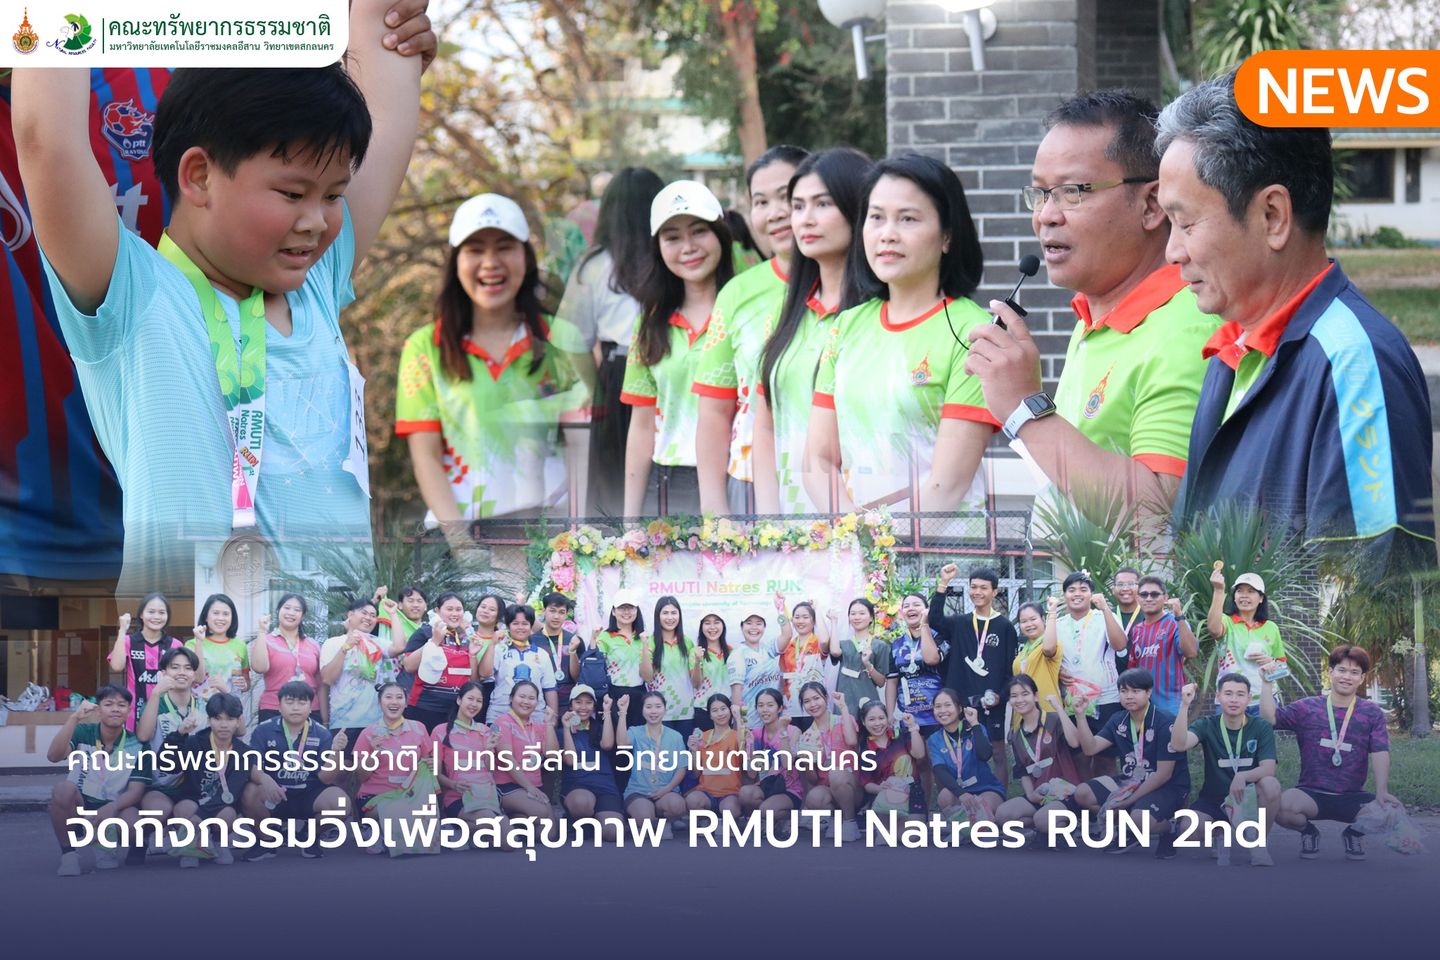 คณะทรัพยากรธรรมชาติจัดกิจกรรมวิ่งเพื่อสุขภาพ RMUTI Natres RUN 2nd